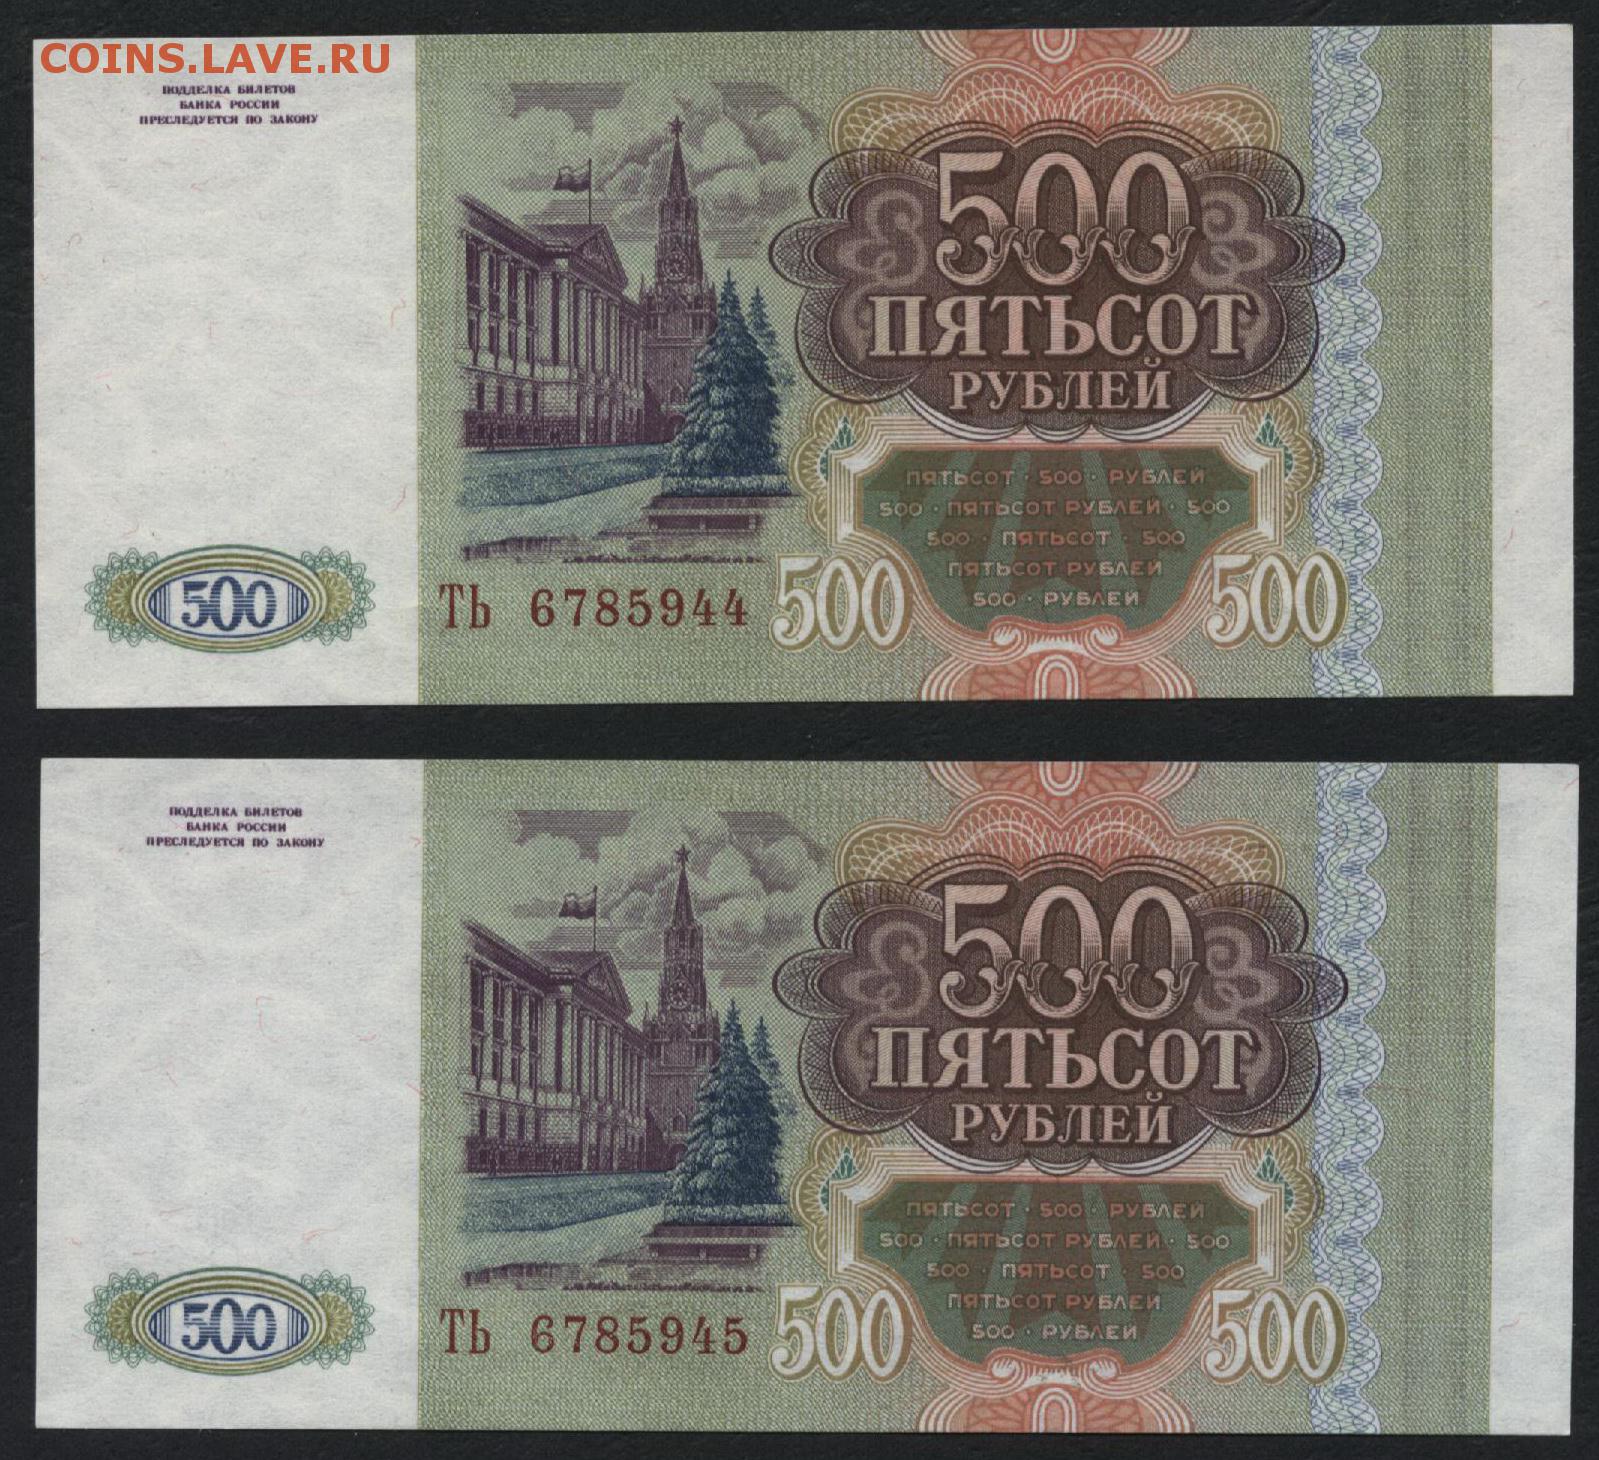 22 500 в рублях. 500 Рублей. 500 Рублей 1993. Пятьсот рублей 1993. 500 Рублей 1993 года.